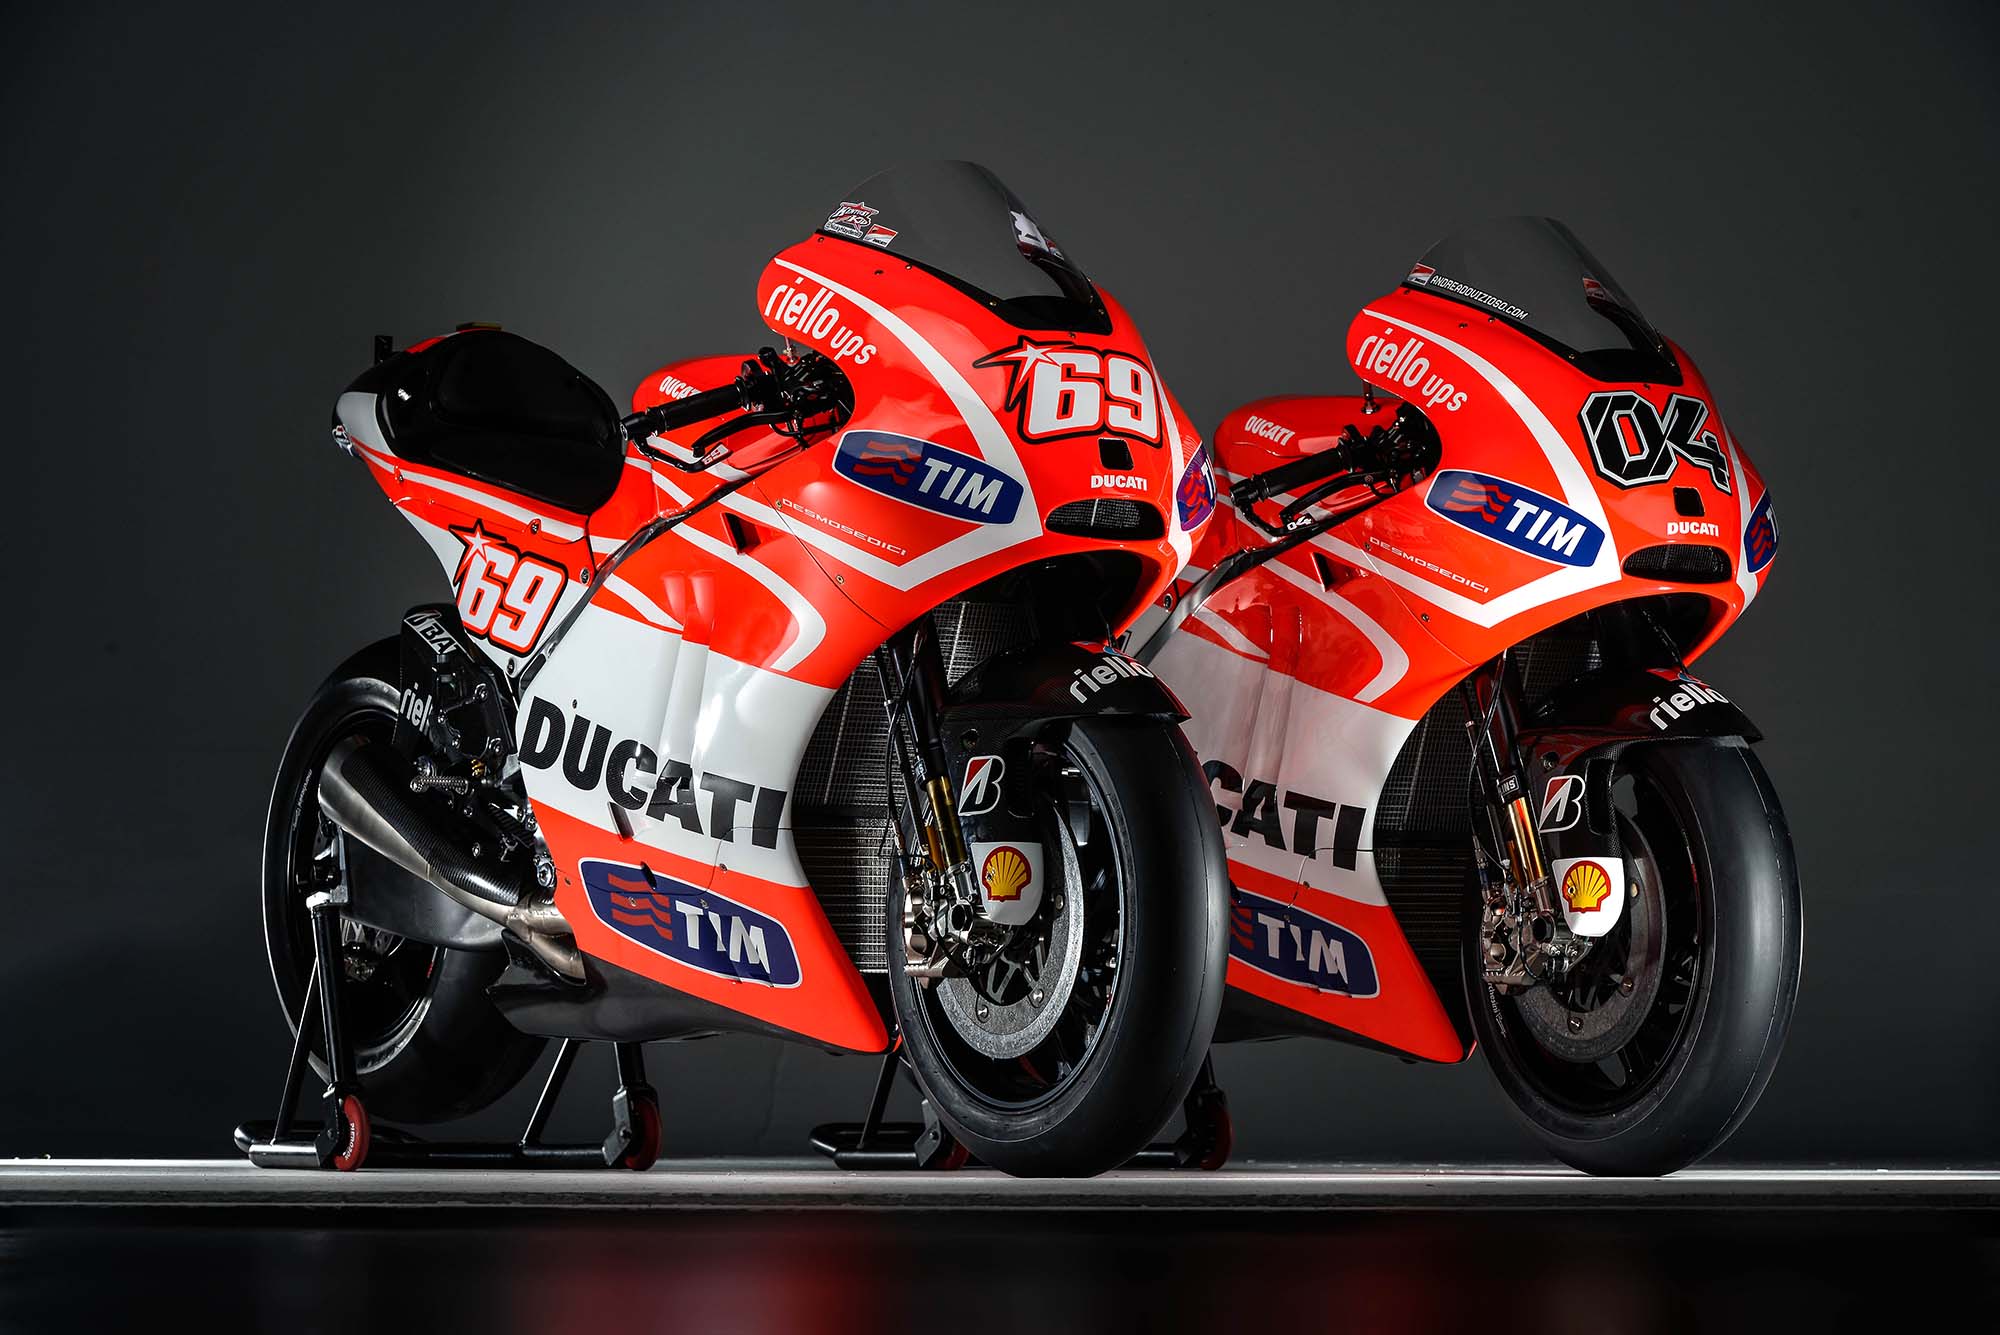 MotoGP, Motor terbaru nicky hayden dan andrea davizioso untuk MotoGP 2013: Spesifikasi dan Foto Motor Ducati Desmosedici GP13